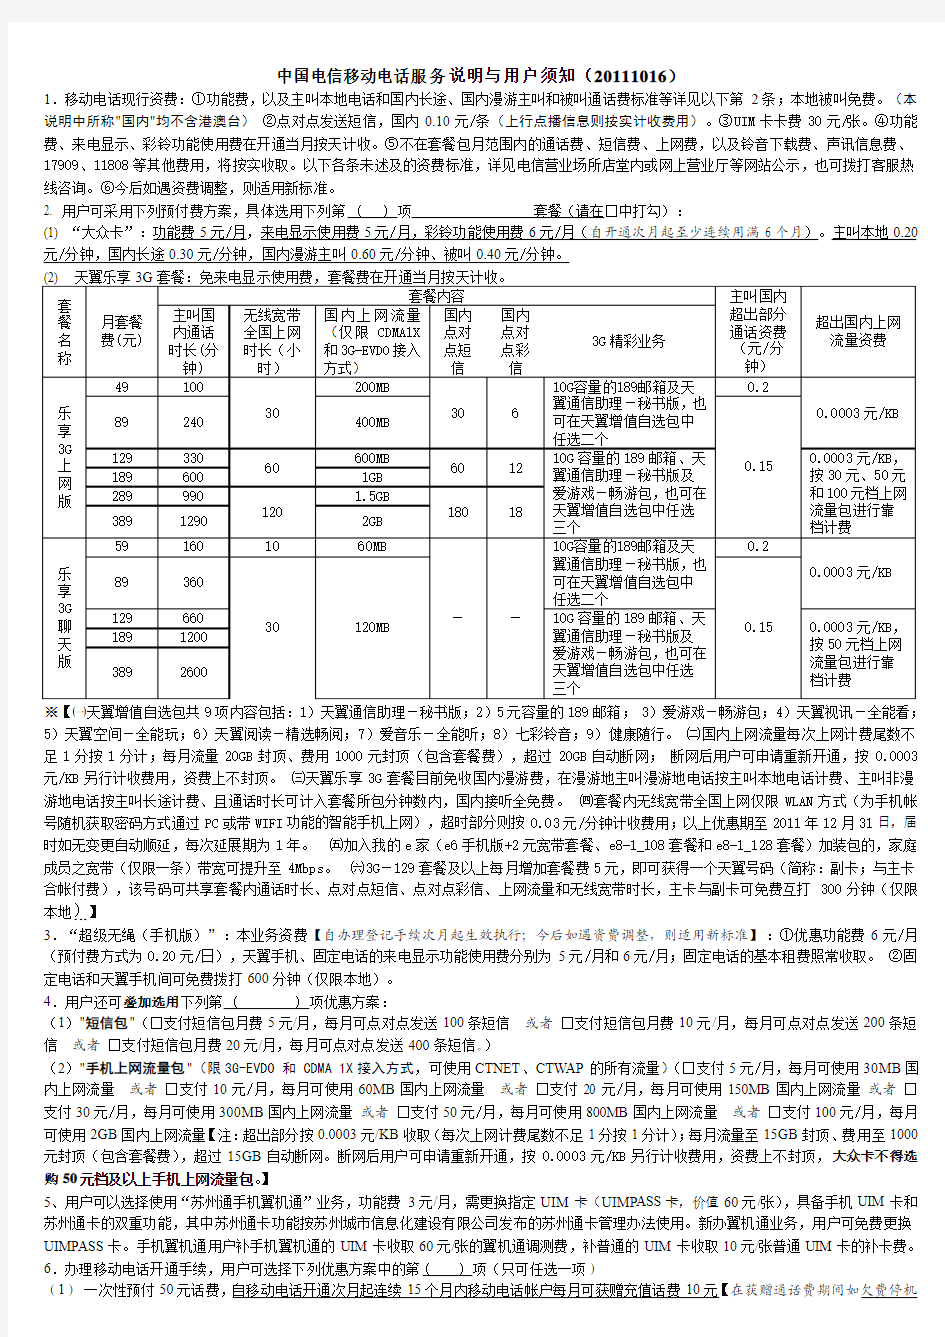 中国电信移动电话服务说明与用户须知(101228版)